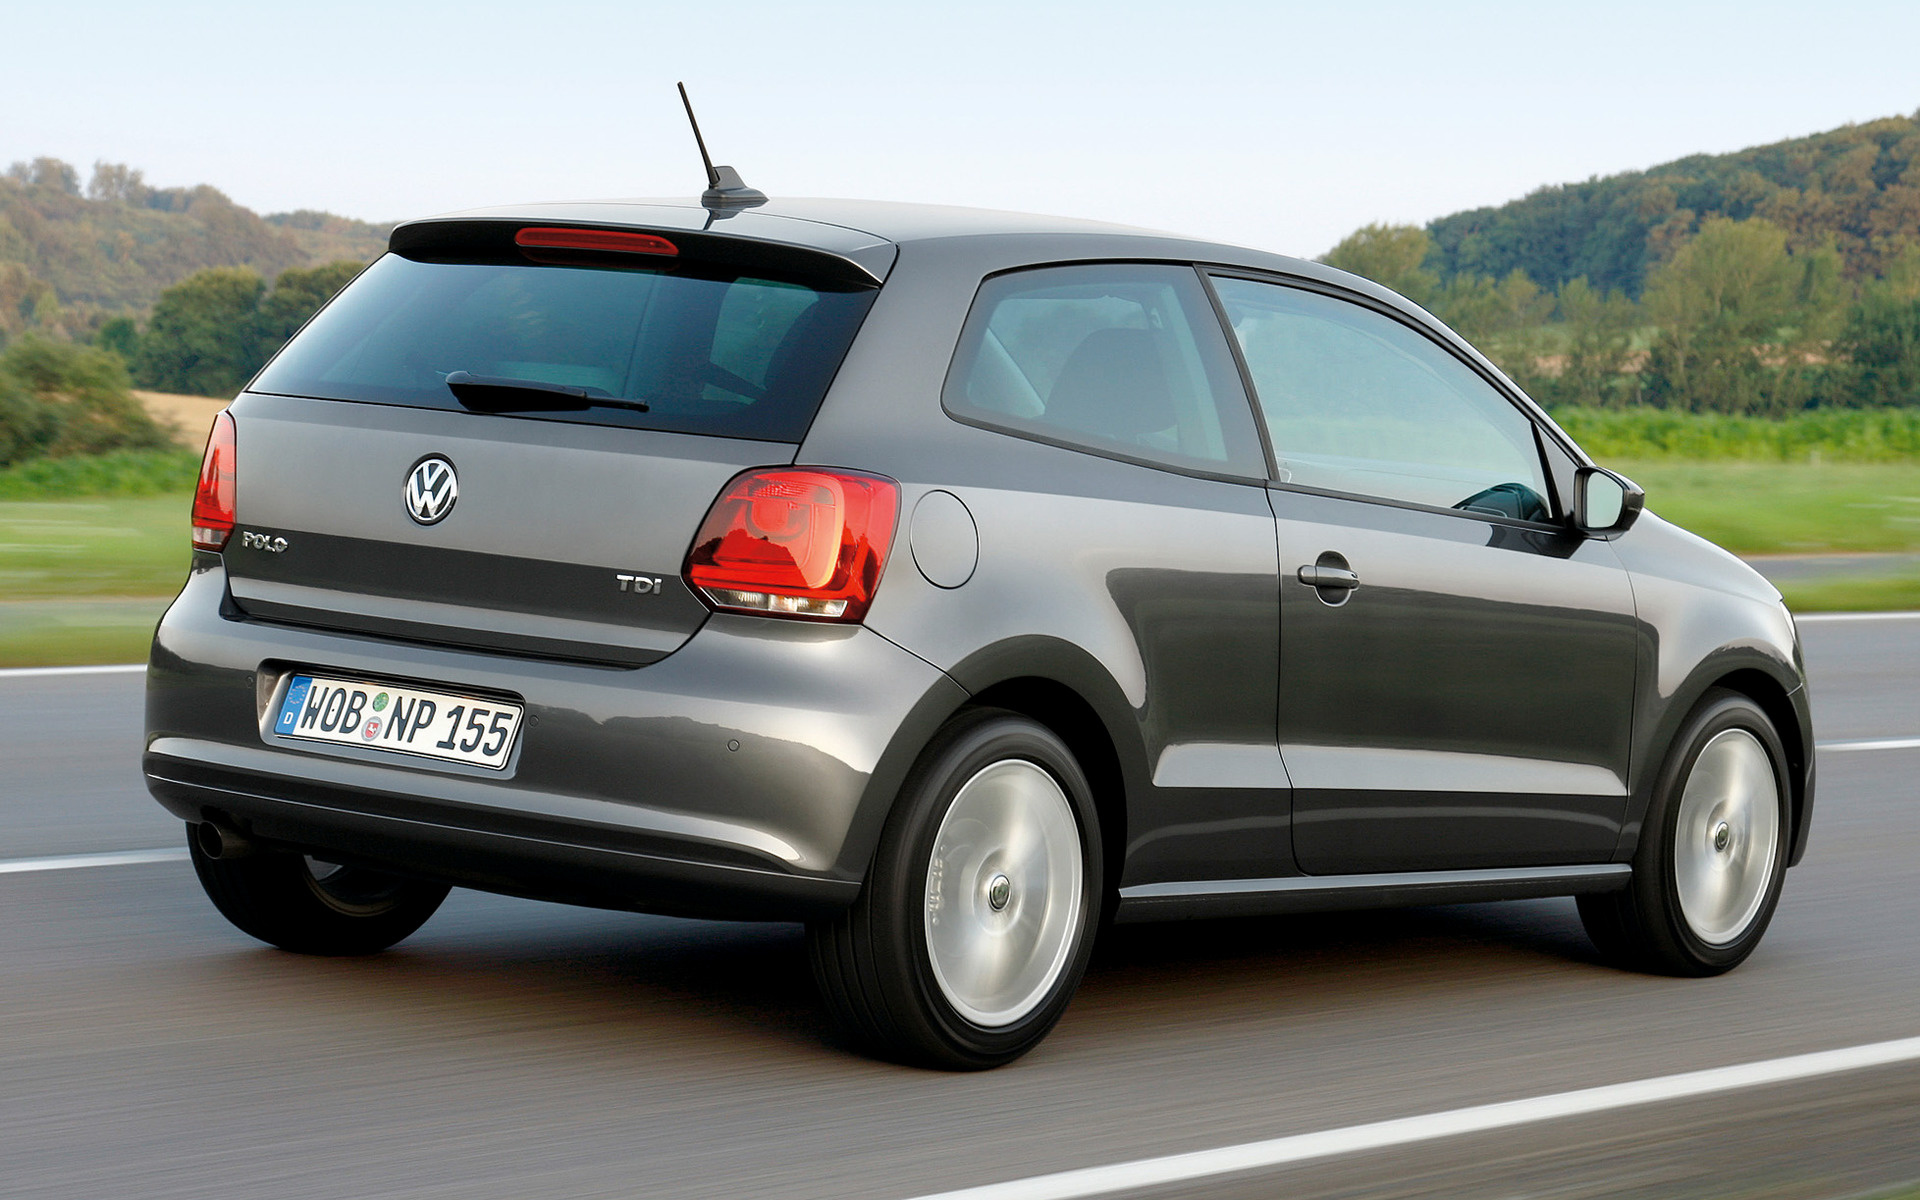 2009 Volkswagen Polo 3door Wallpapers and HD Images